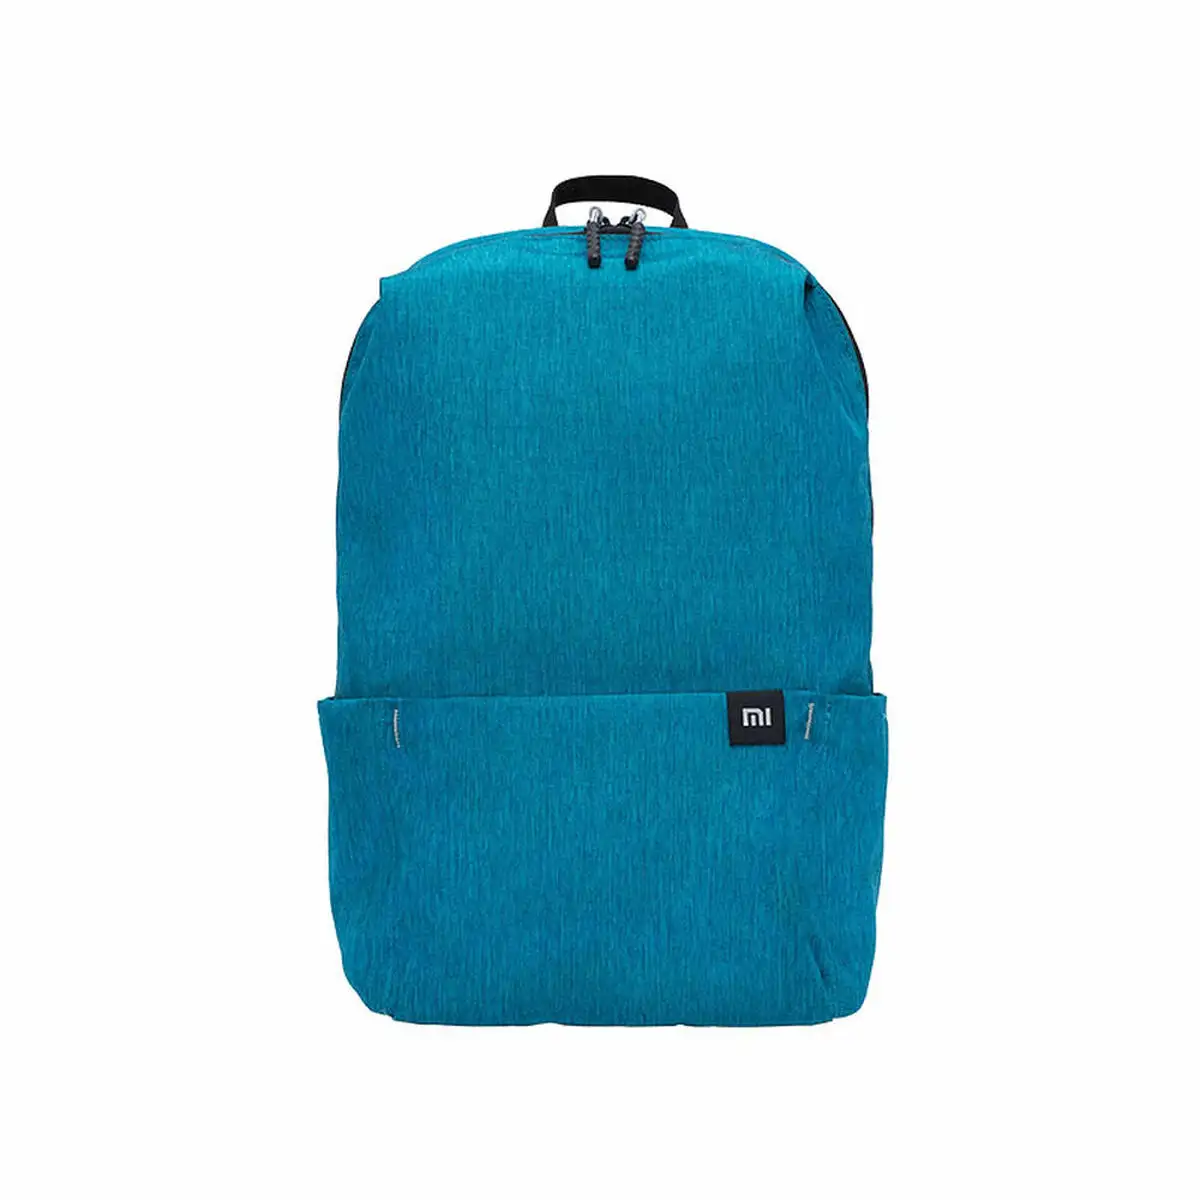 Housse pour ordinateur portable xiaomi mi casual daypack dark blue bleu_2206. DIAYTAR SENEGAL - Votre Plateforme Shopping de Confiance. Naviguez à travers nos rayons et choisissez des produits fiables qui répondent à vos besoins quotidiens.